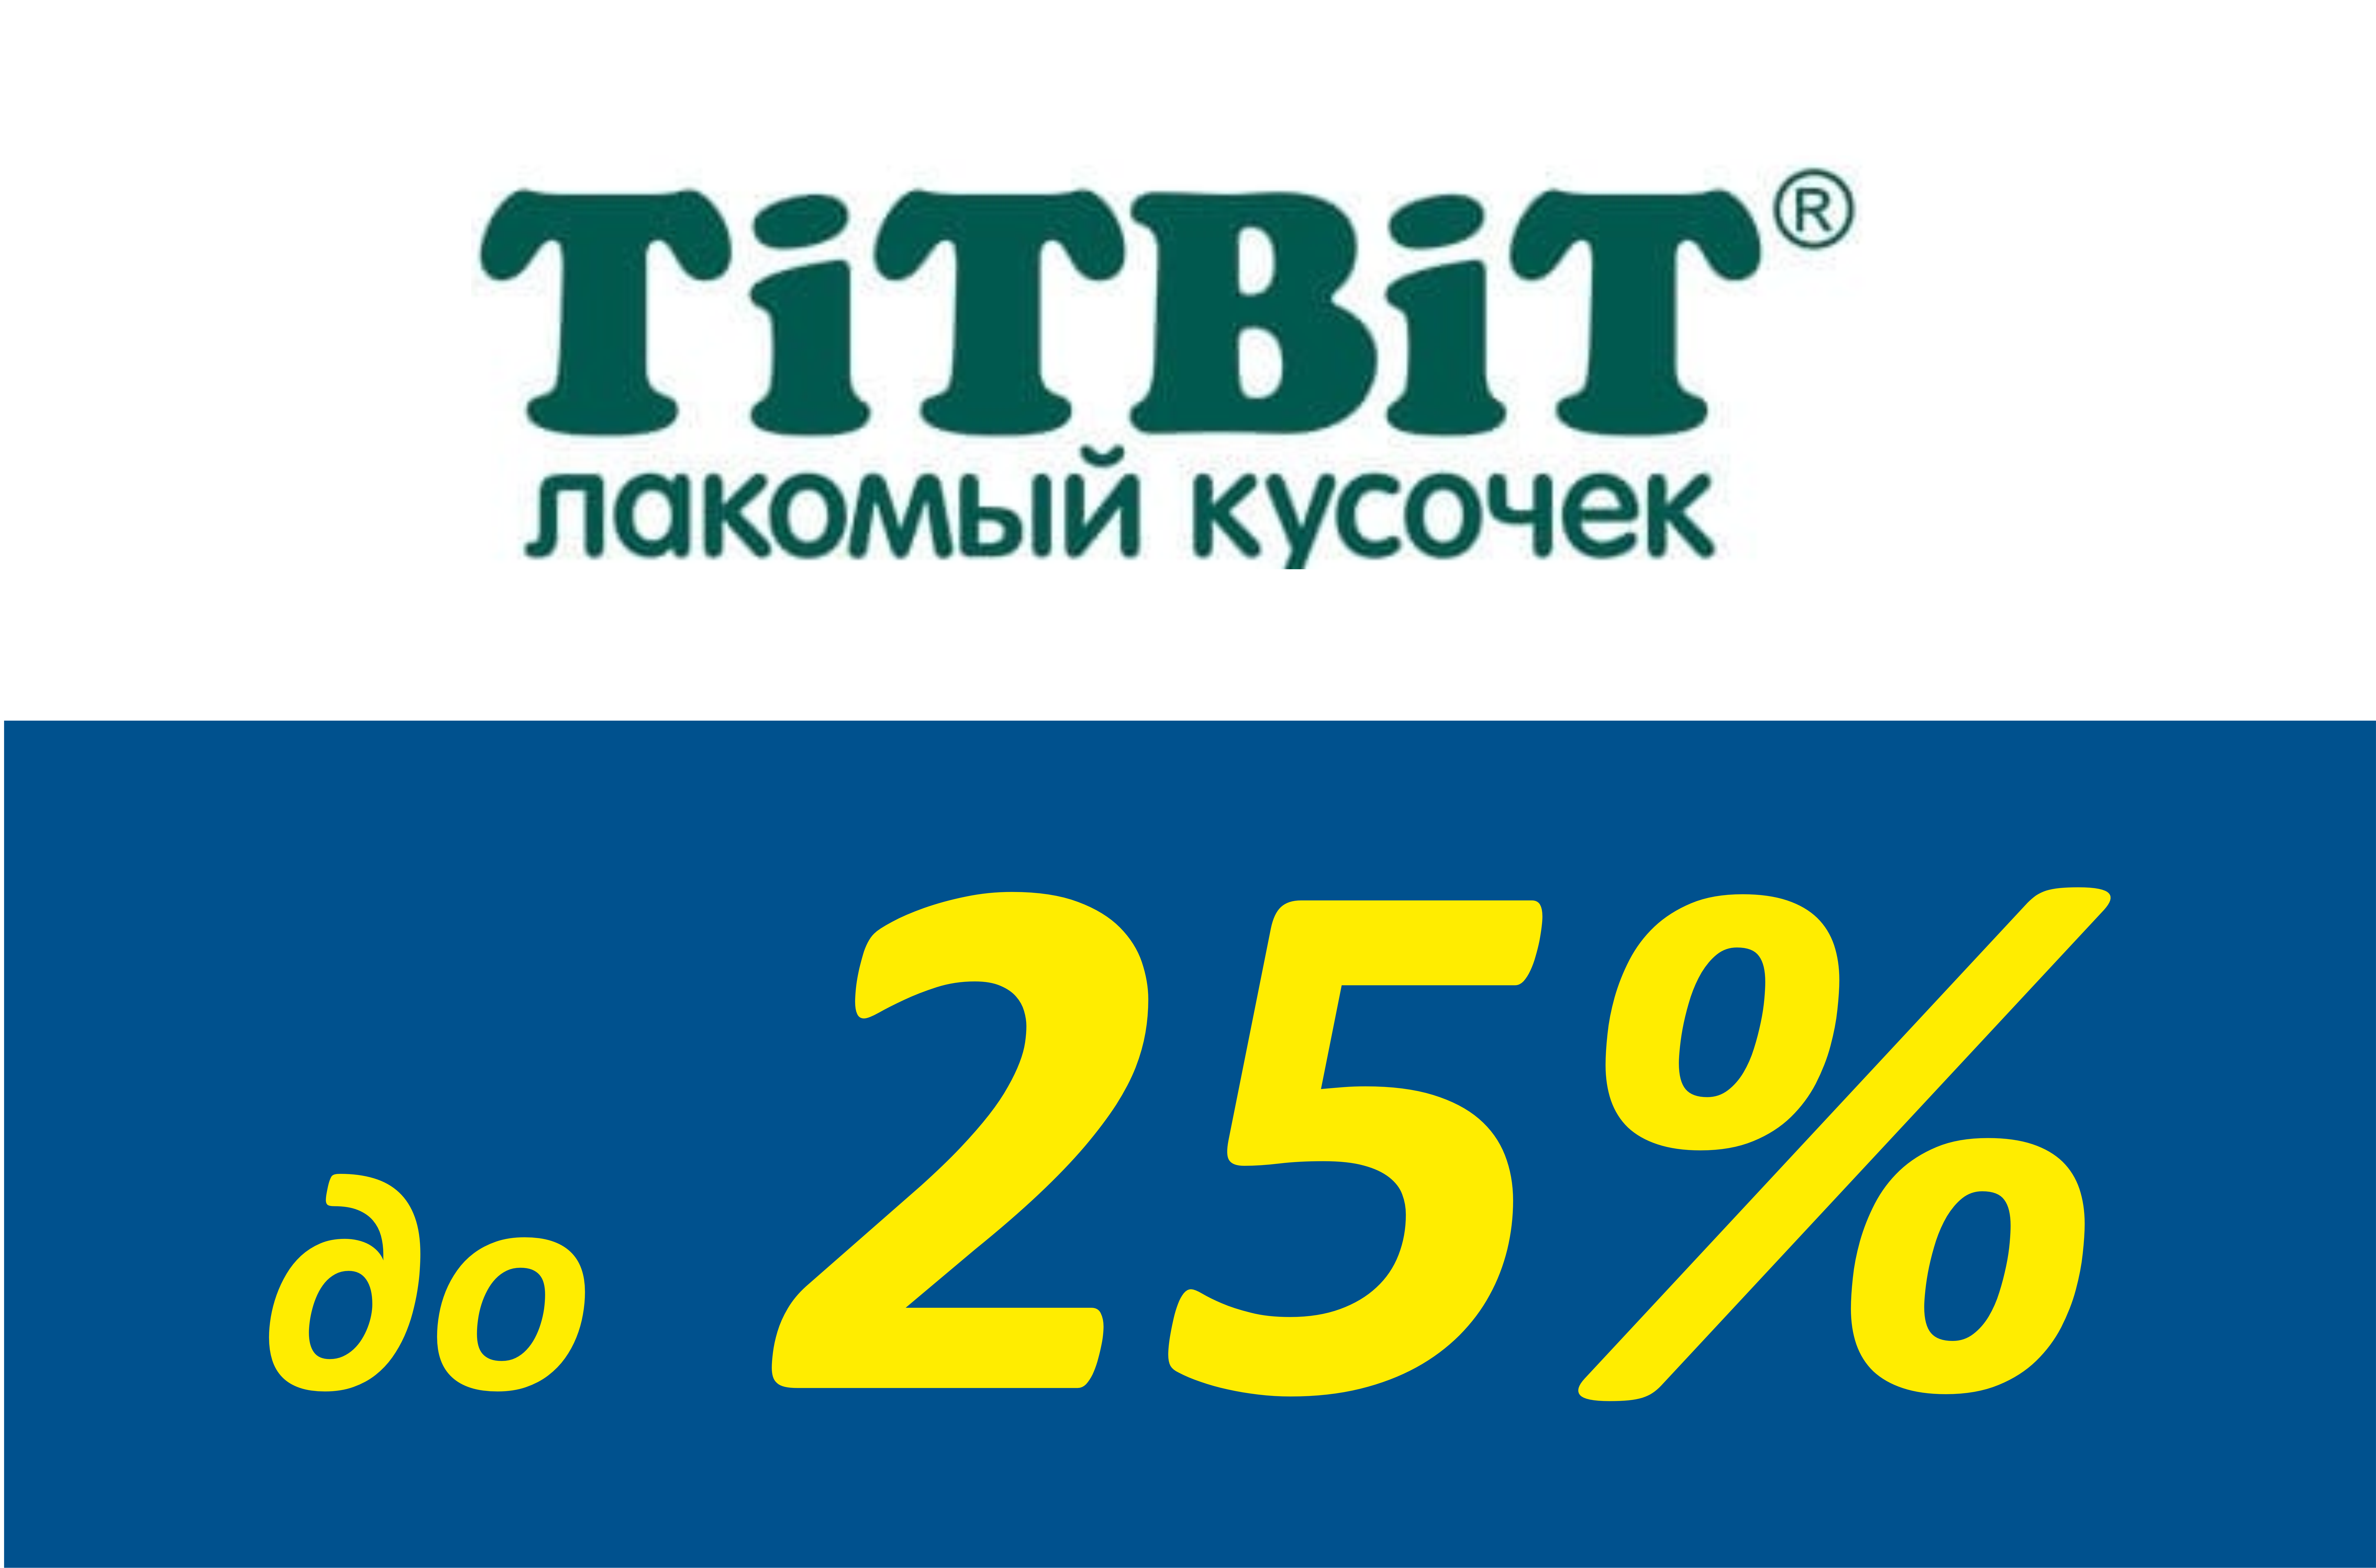 Скидка до 25% на лакомства от торговой марки TiTBiT